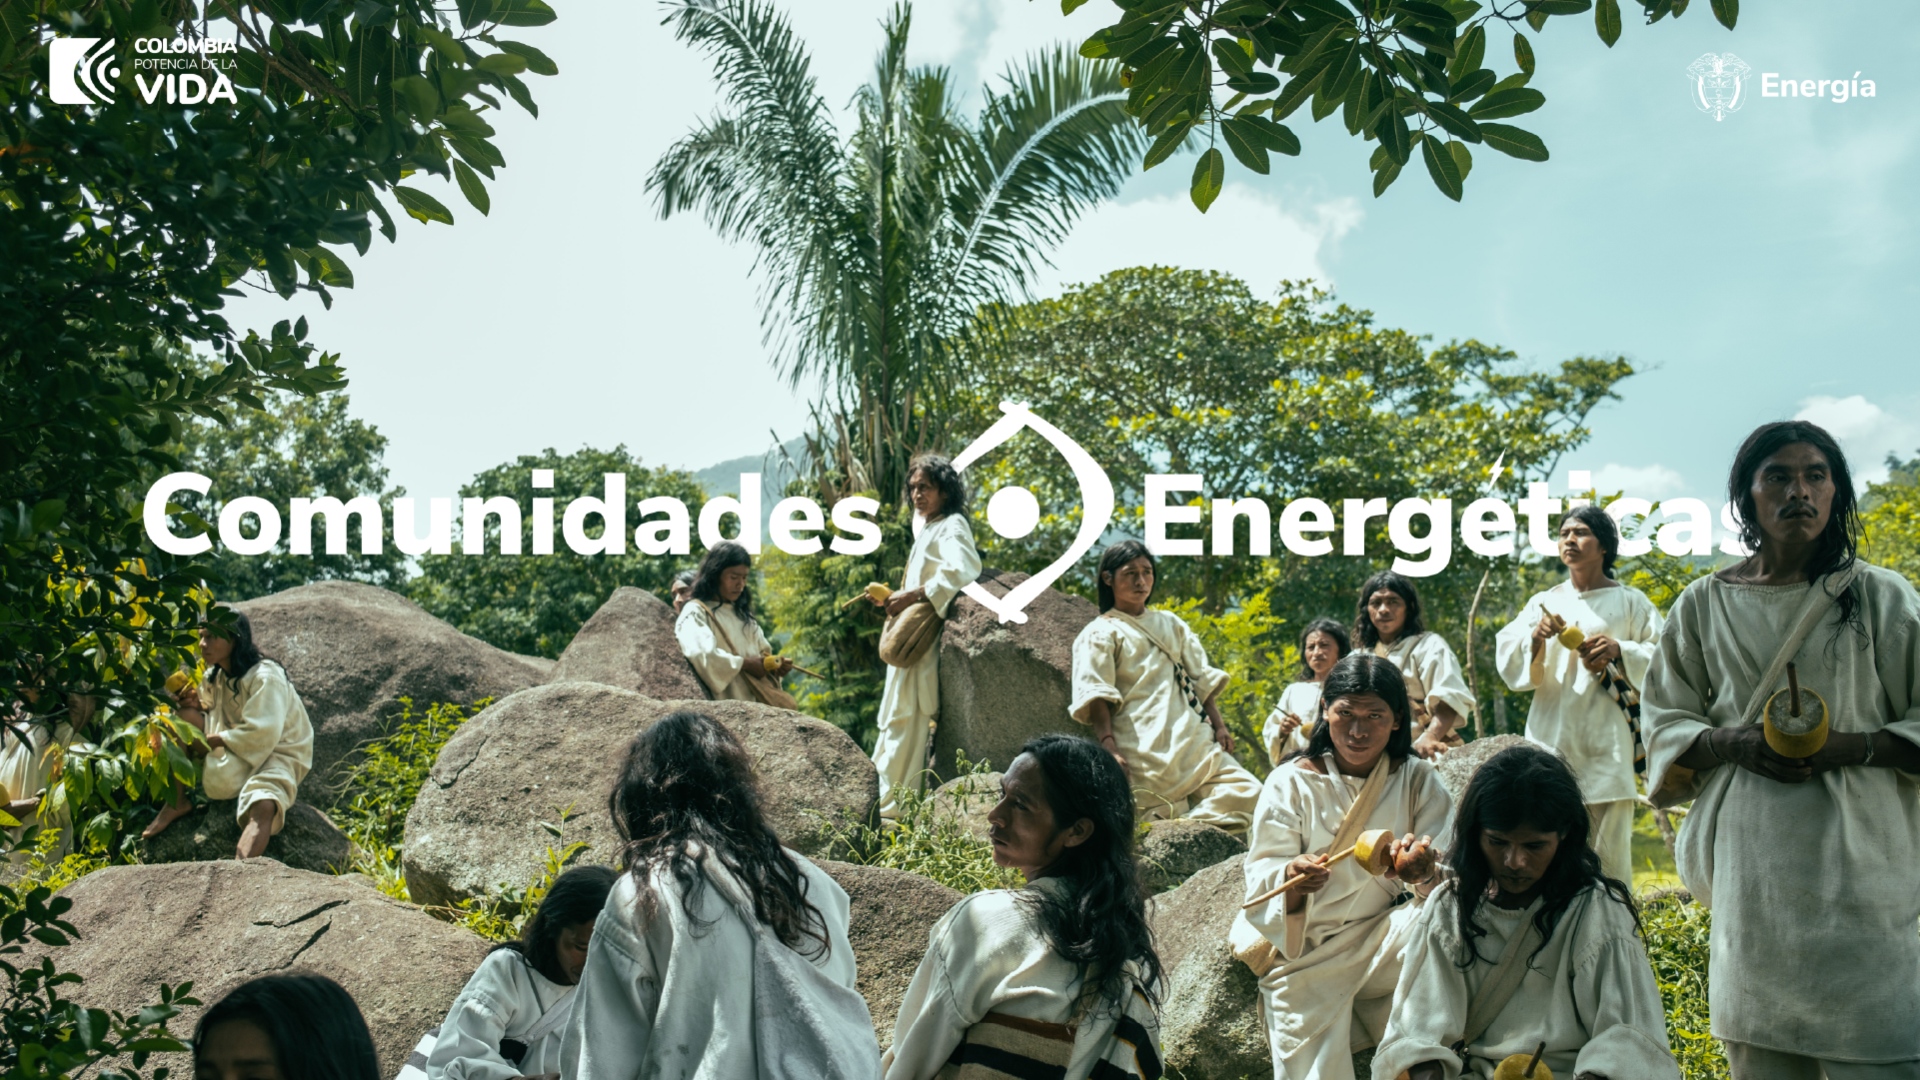 Foto de la comunidad indigena con logos de Comunidades Energéticas